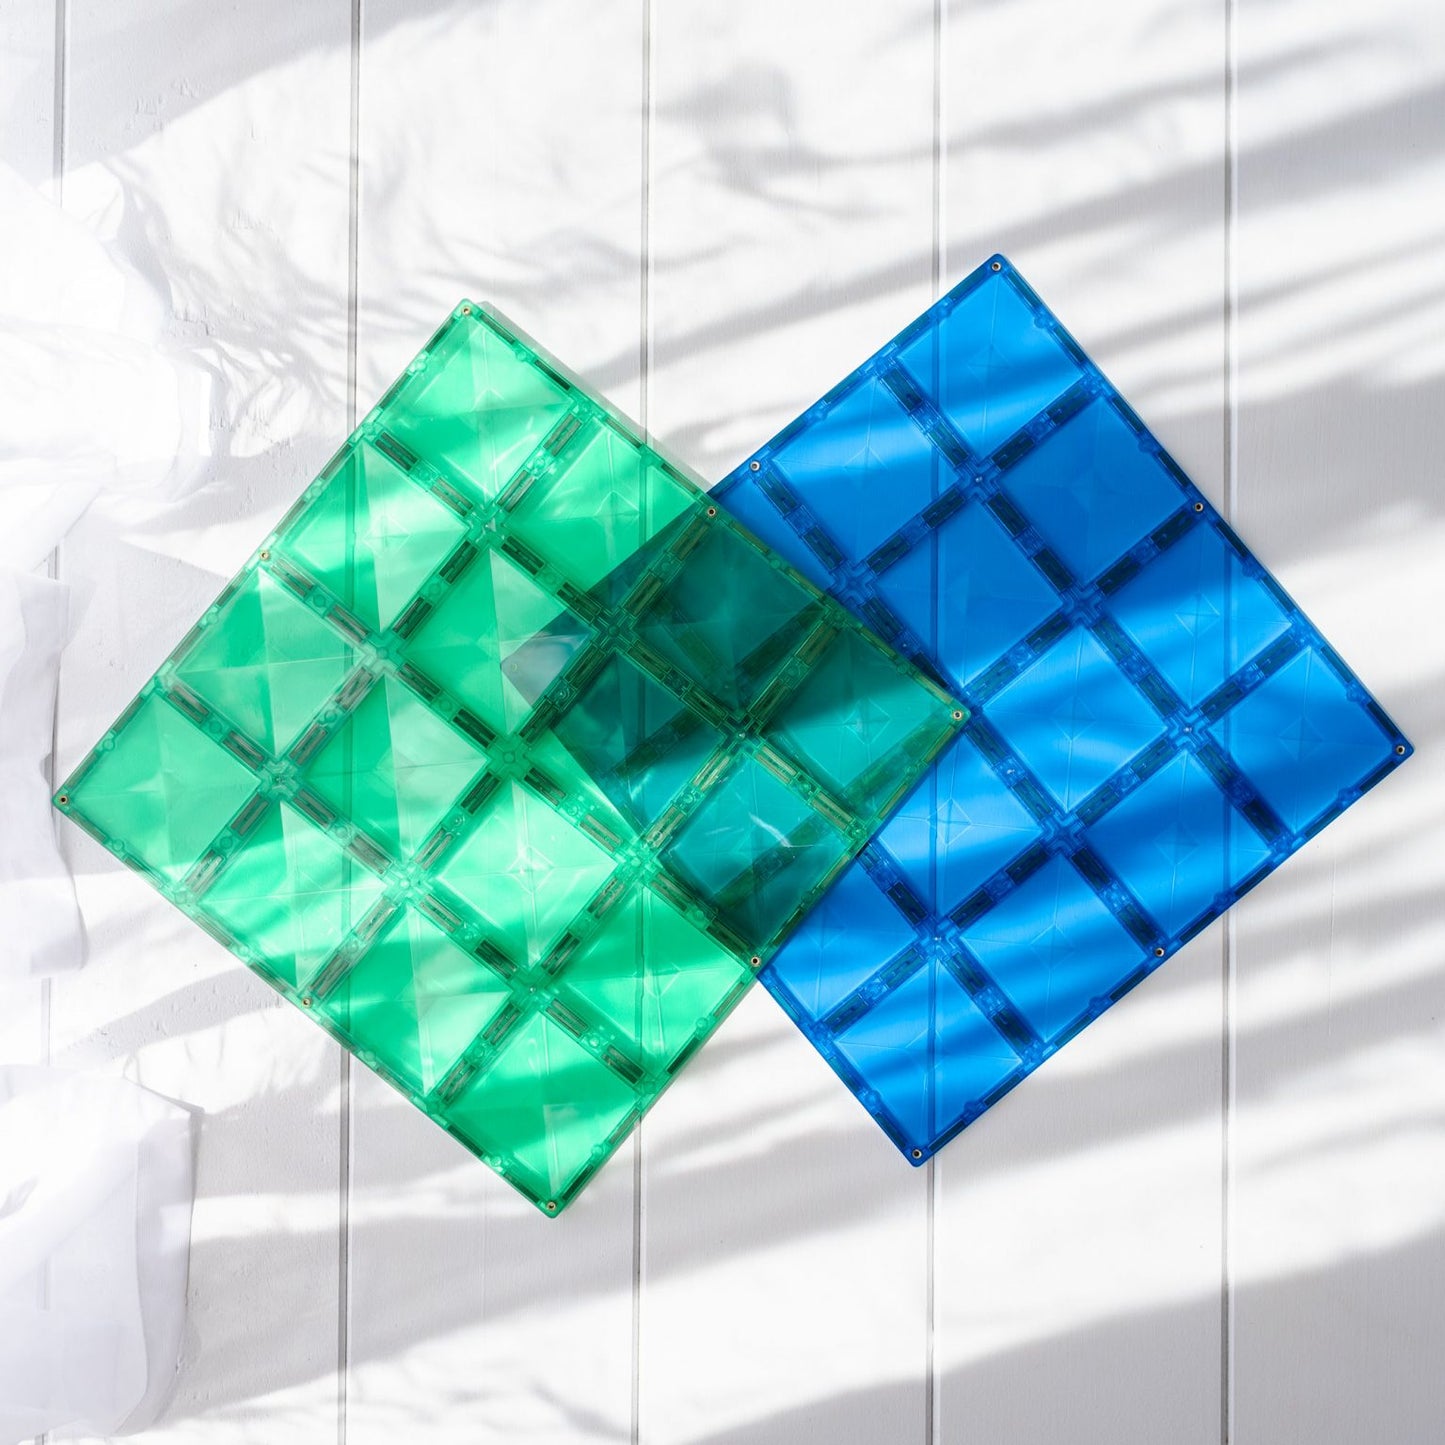 2 Piece Base Plate Green & Blue Pack - Connetix Tiles